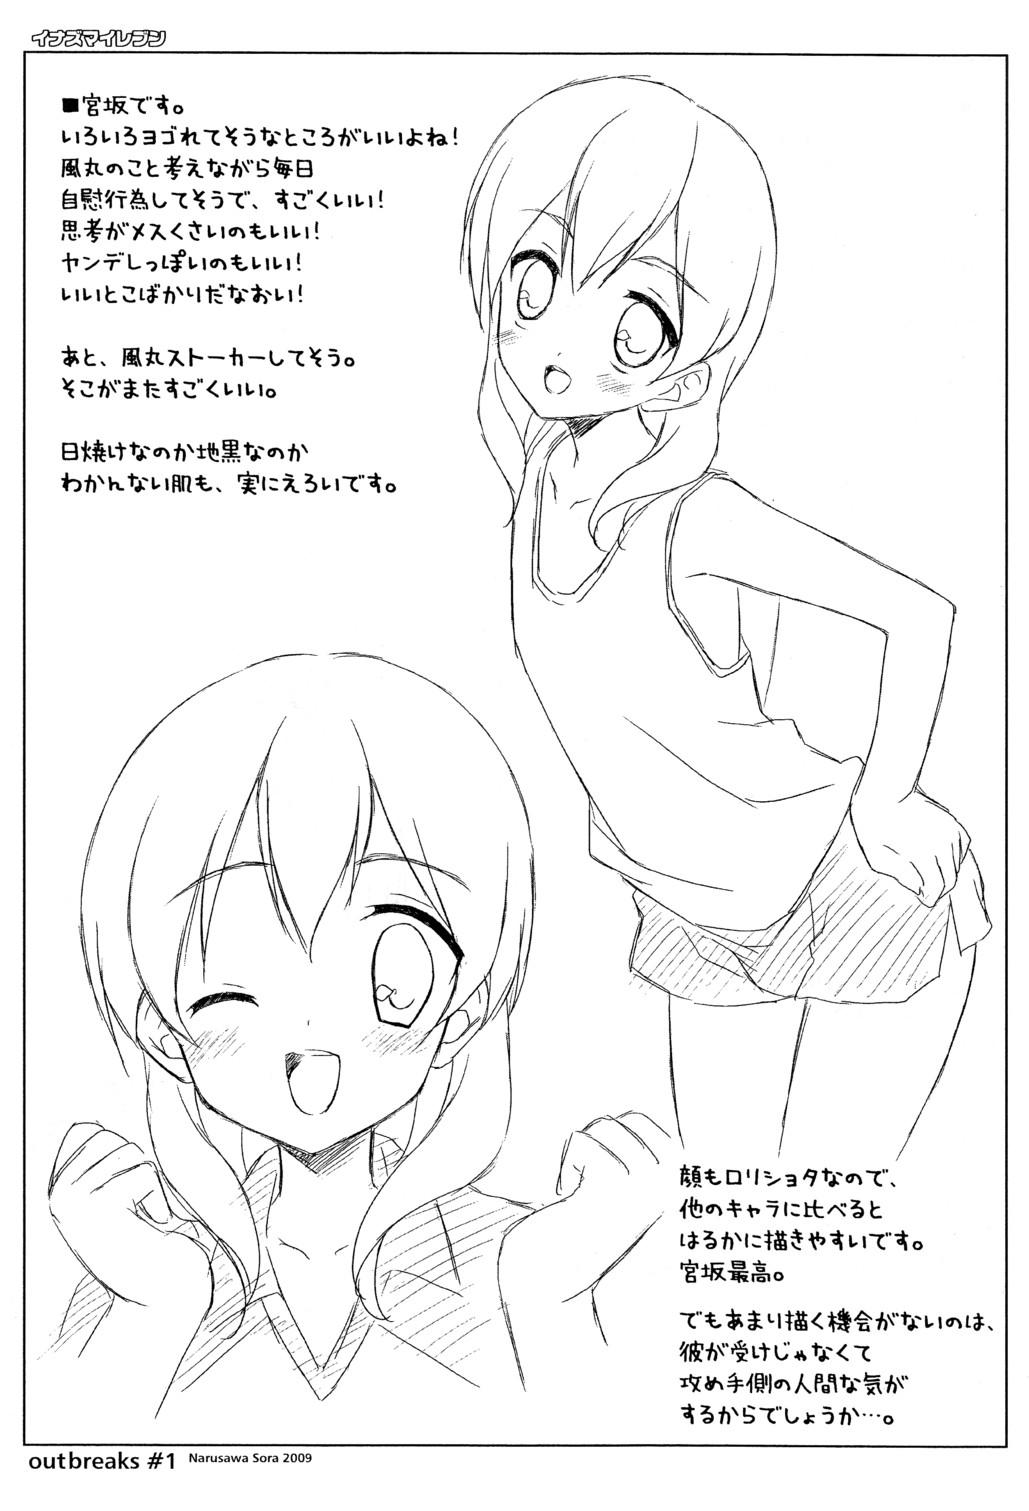 Anal Licking Toppatsu Oribon 1 Gou - Inazuma eleven Pool - Page 8